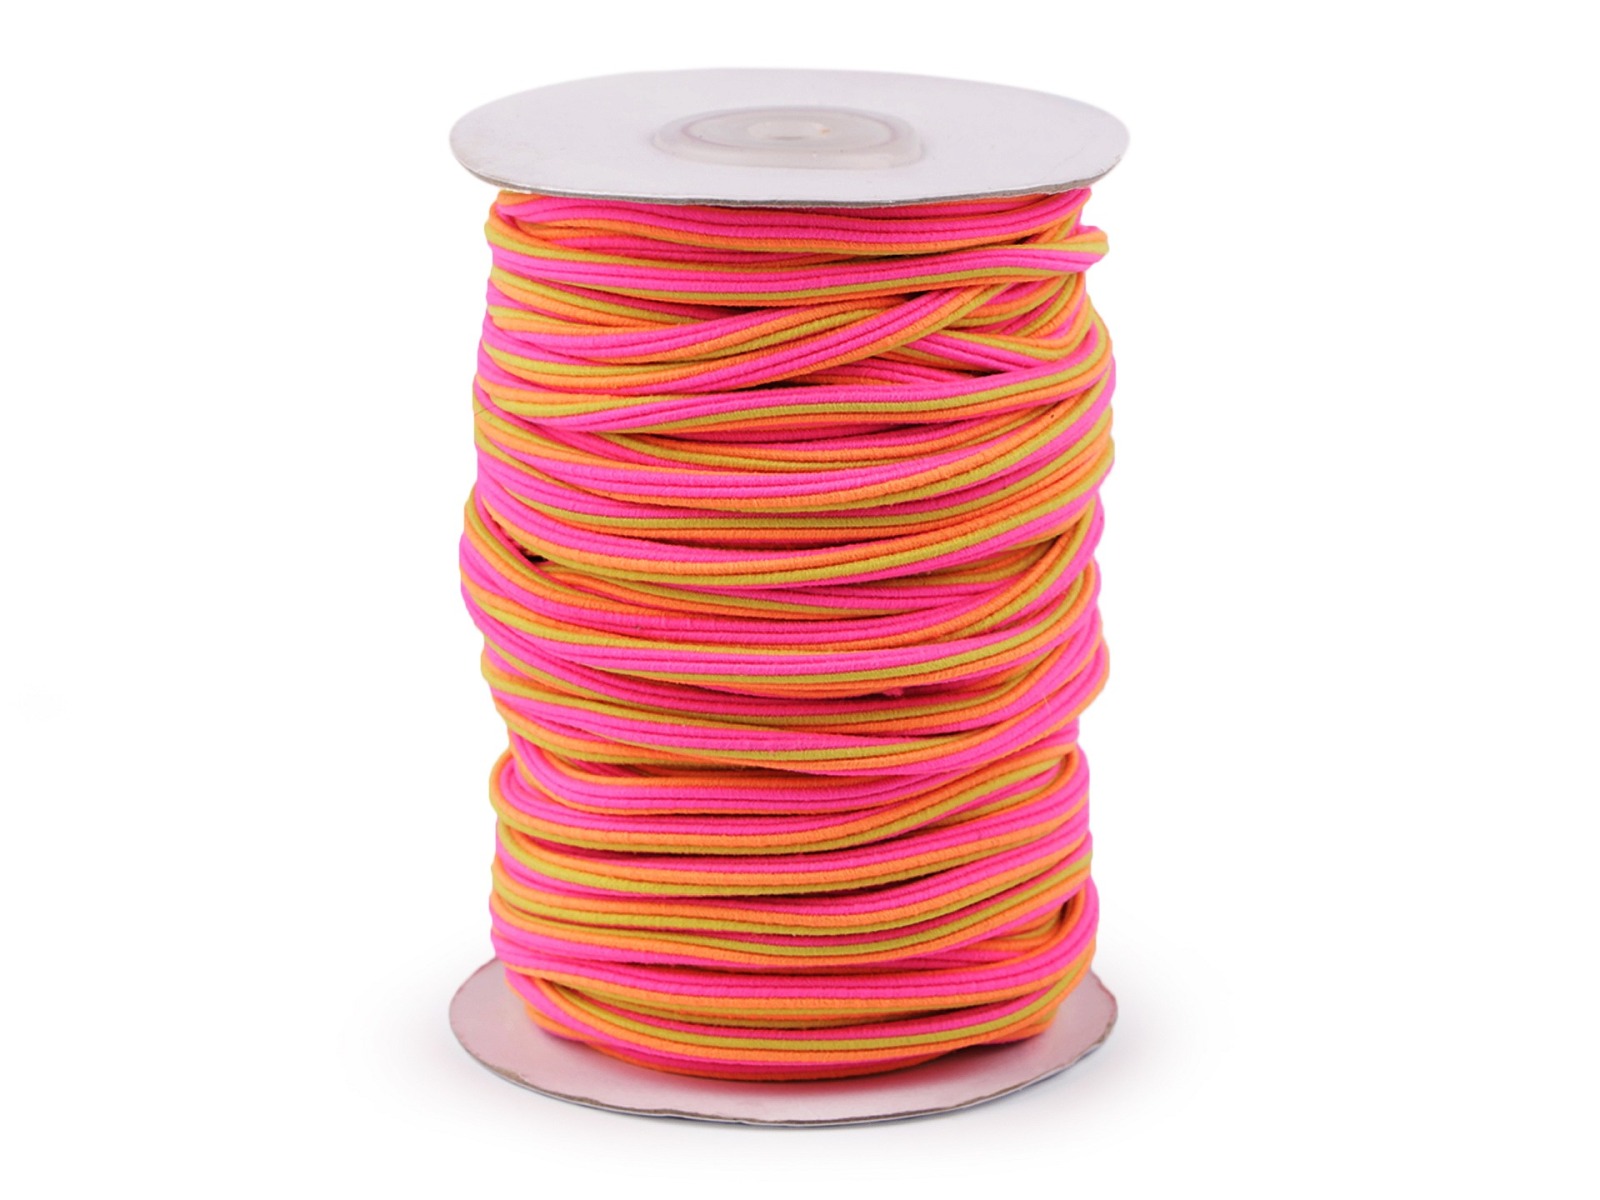 1,25 EUR/m - 2 m Gummi für Hoodies Kapuzen und Hosen - pink bunt - Rundgummi 5 mm Durchmesser - Met